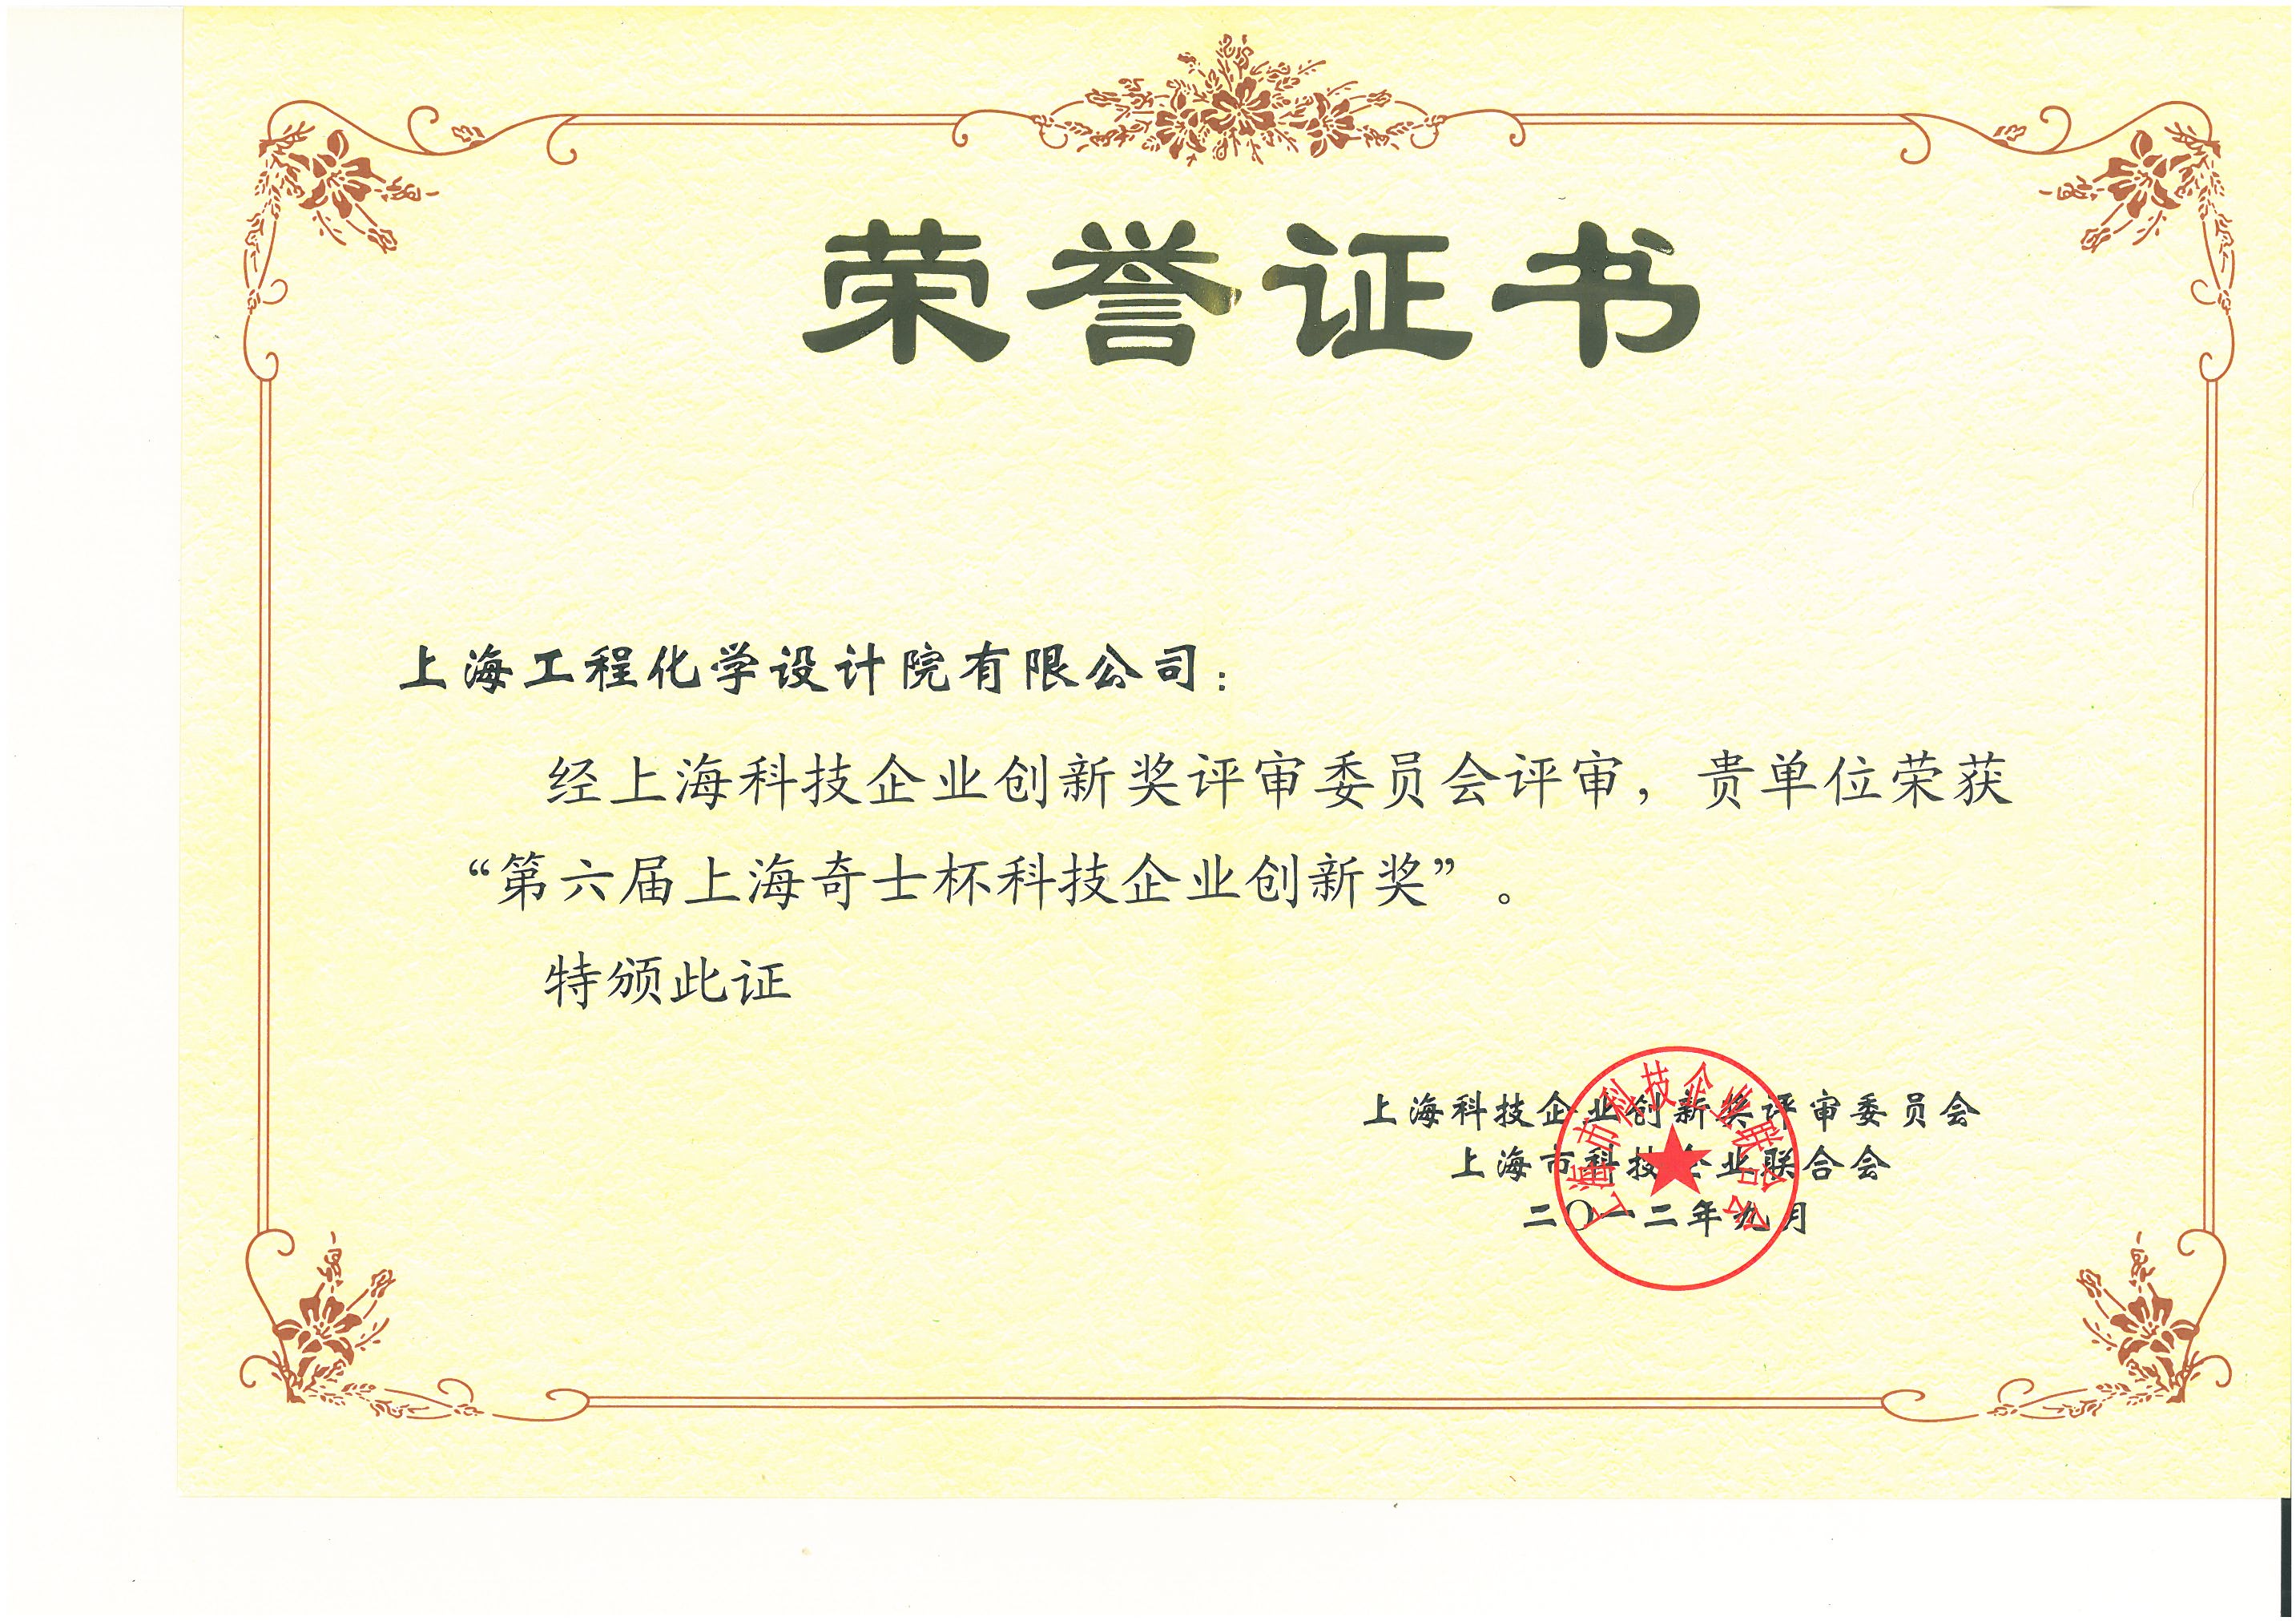 荣誉证书 第六届上海奇士杯科技企业创新奖